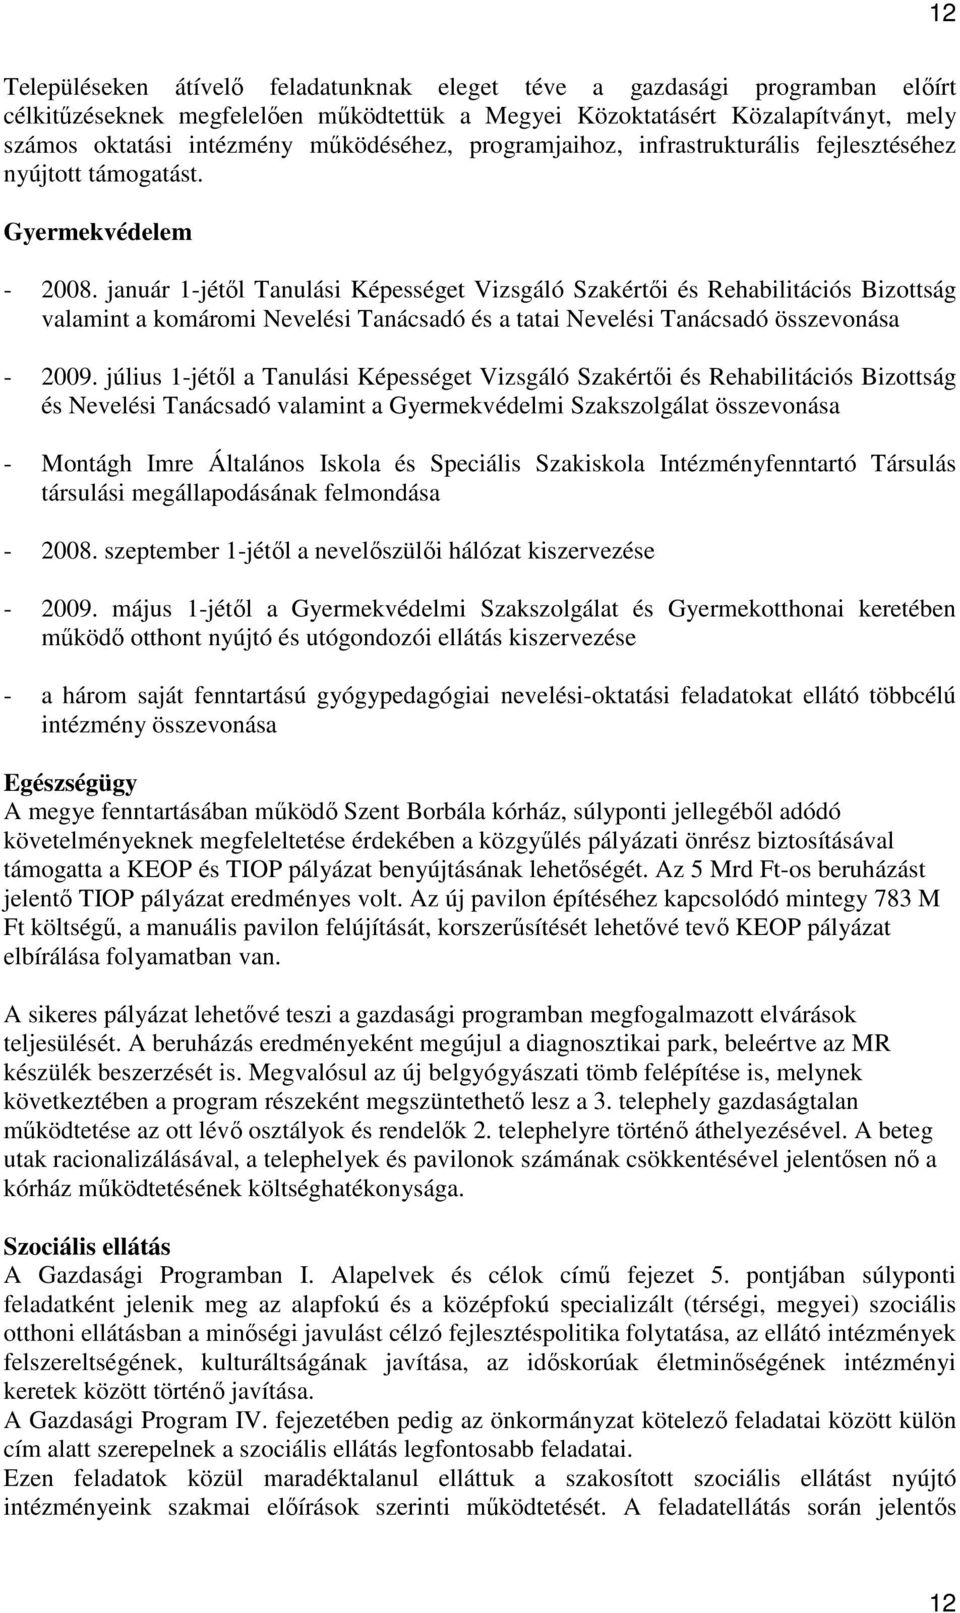 január 1-jétıl Tanulási Képességet Vizsgáló Szakértıi és Rehabilitációs Bizottság valamint a komáromi Nevelési Tanácsadó és a tatai Nevelési Tanácsadó összevonása - 2009.